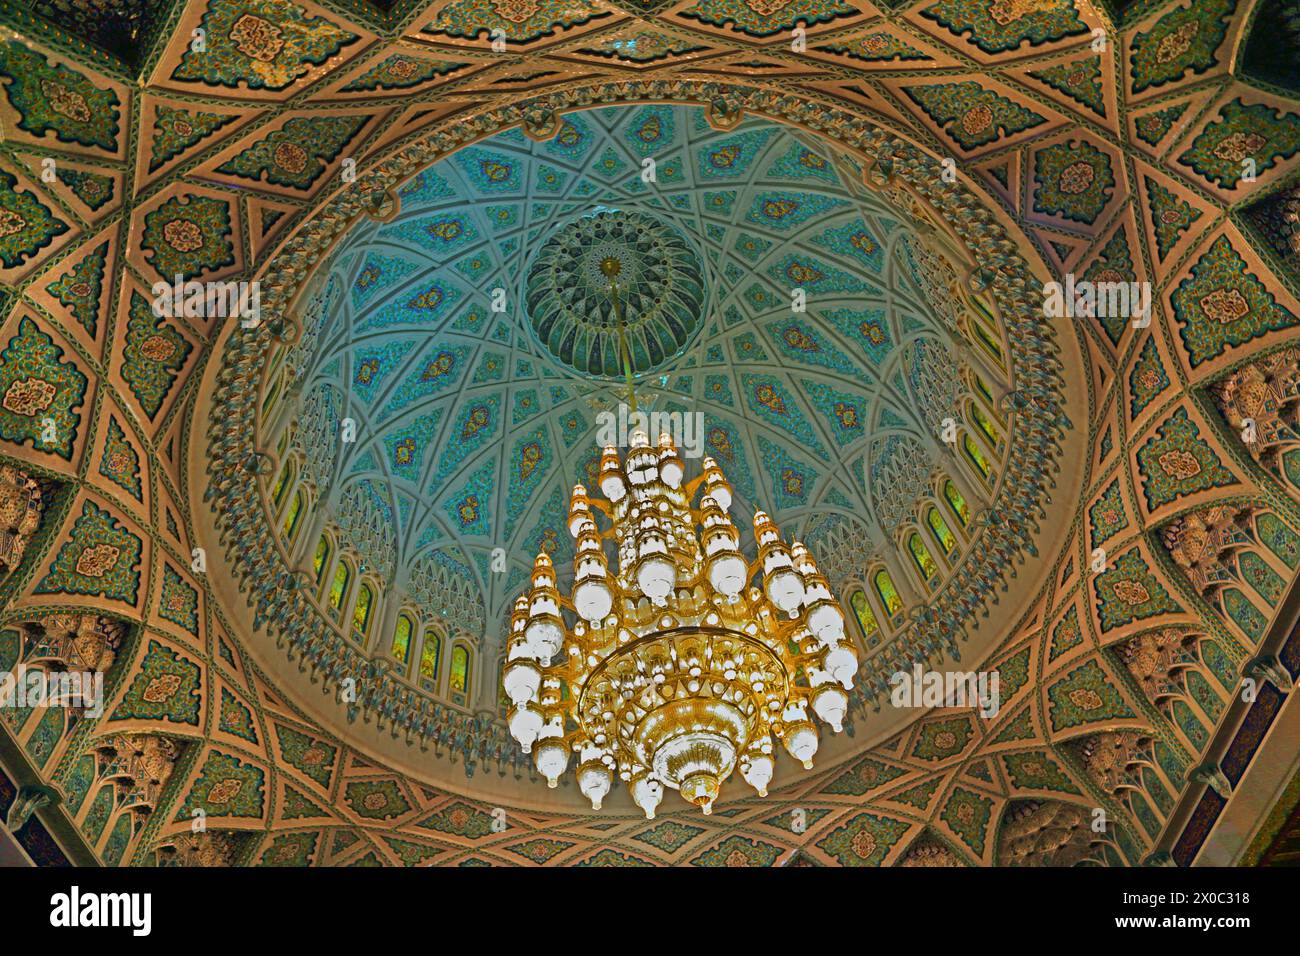 Sultan Qaboos Grand intérieur de la Mosquée montrant le lustre qui était autrefois le plus grand du monde avec des cristaux Swarovski et 24 Carat Fine Gold Pla Banque D'Images